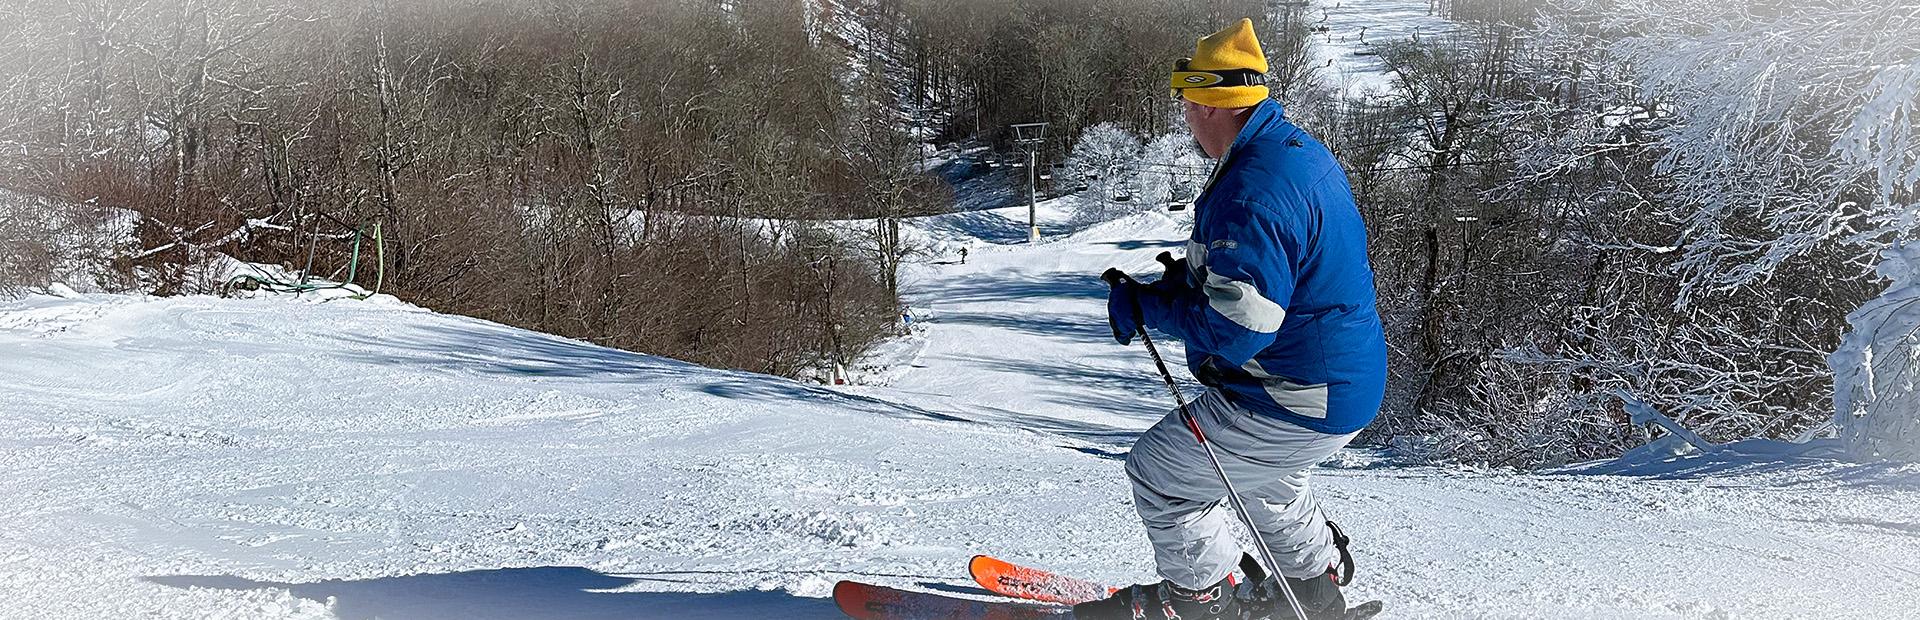 Skiier on slope 1920×300